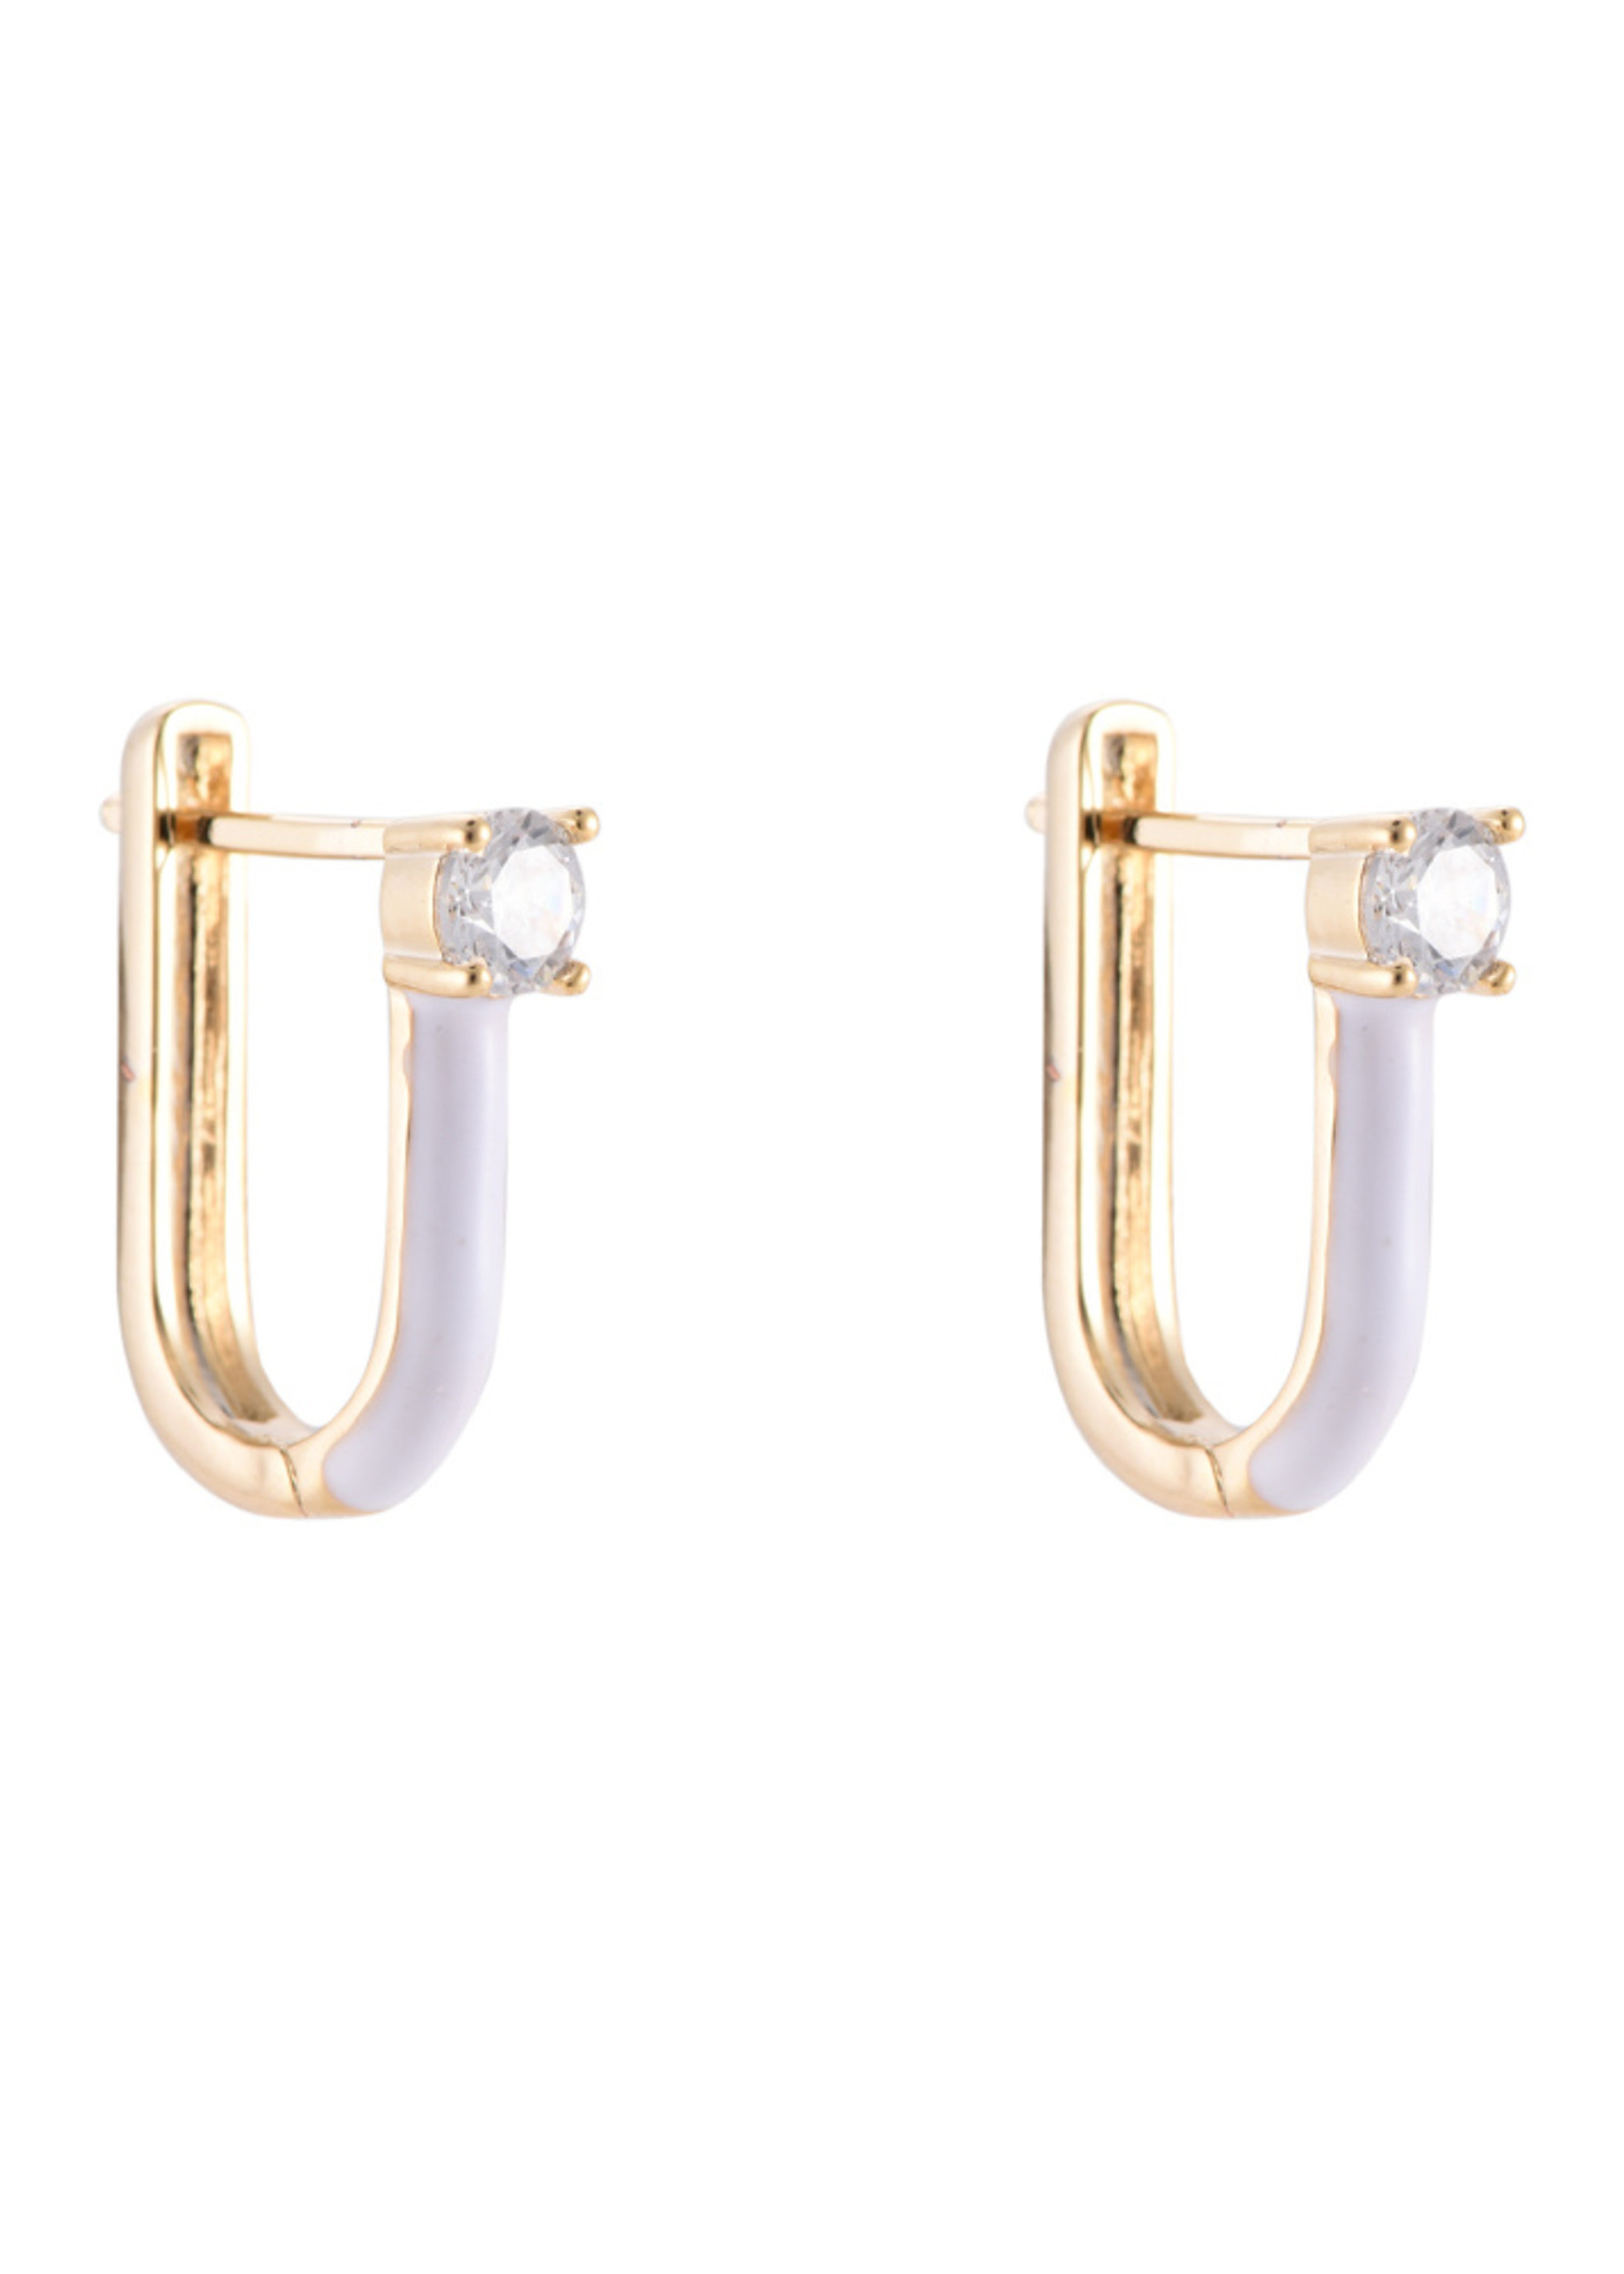 Square Diamond Earring - PER STUK